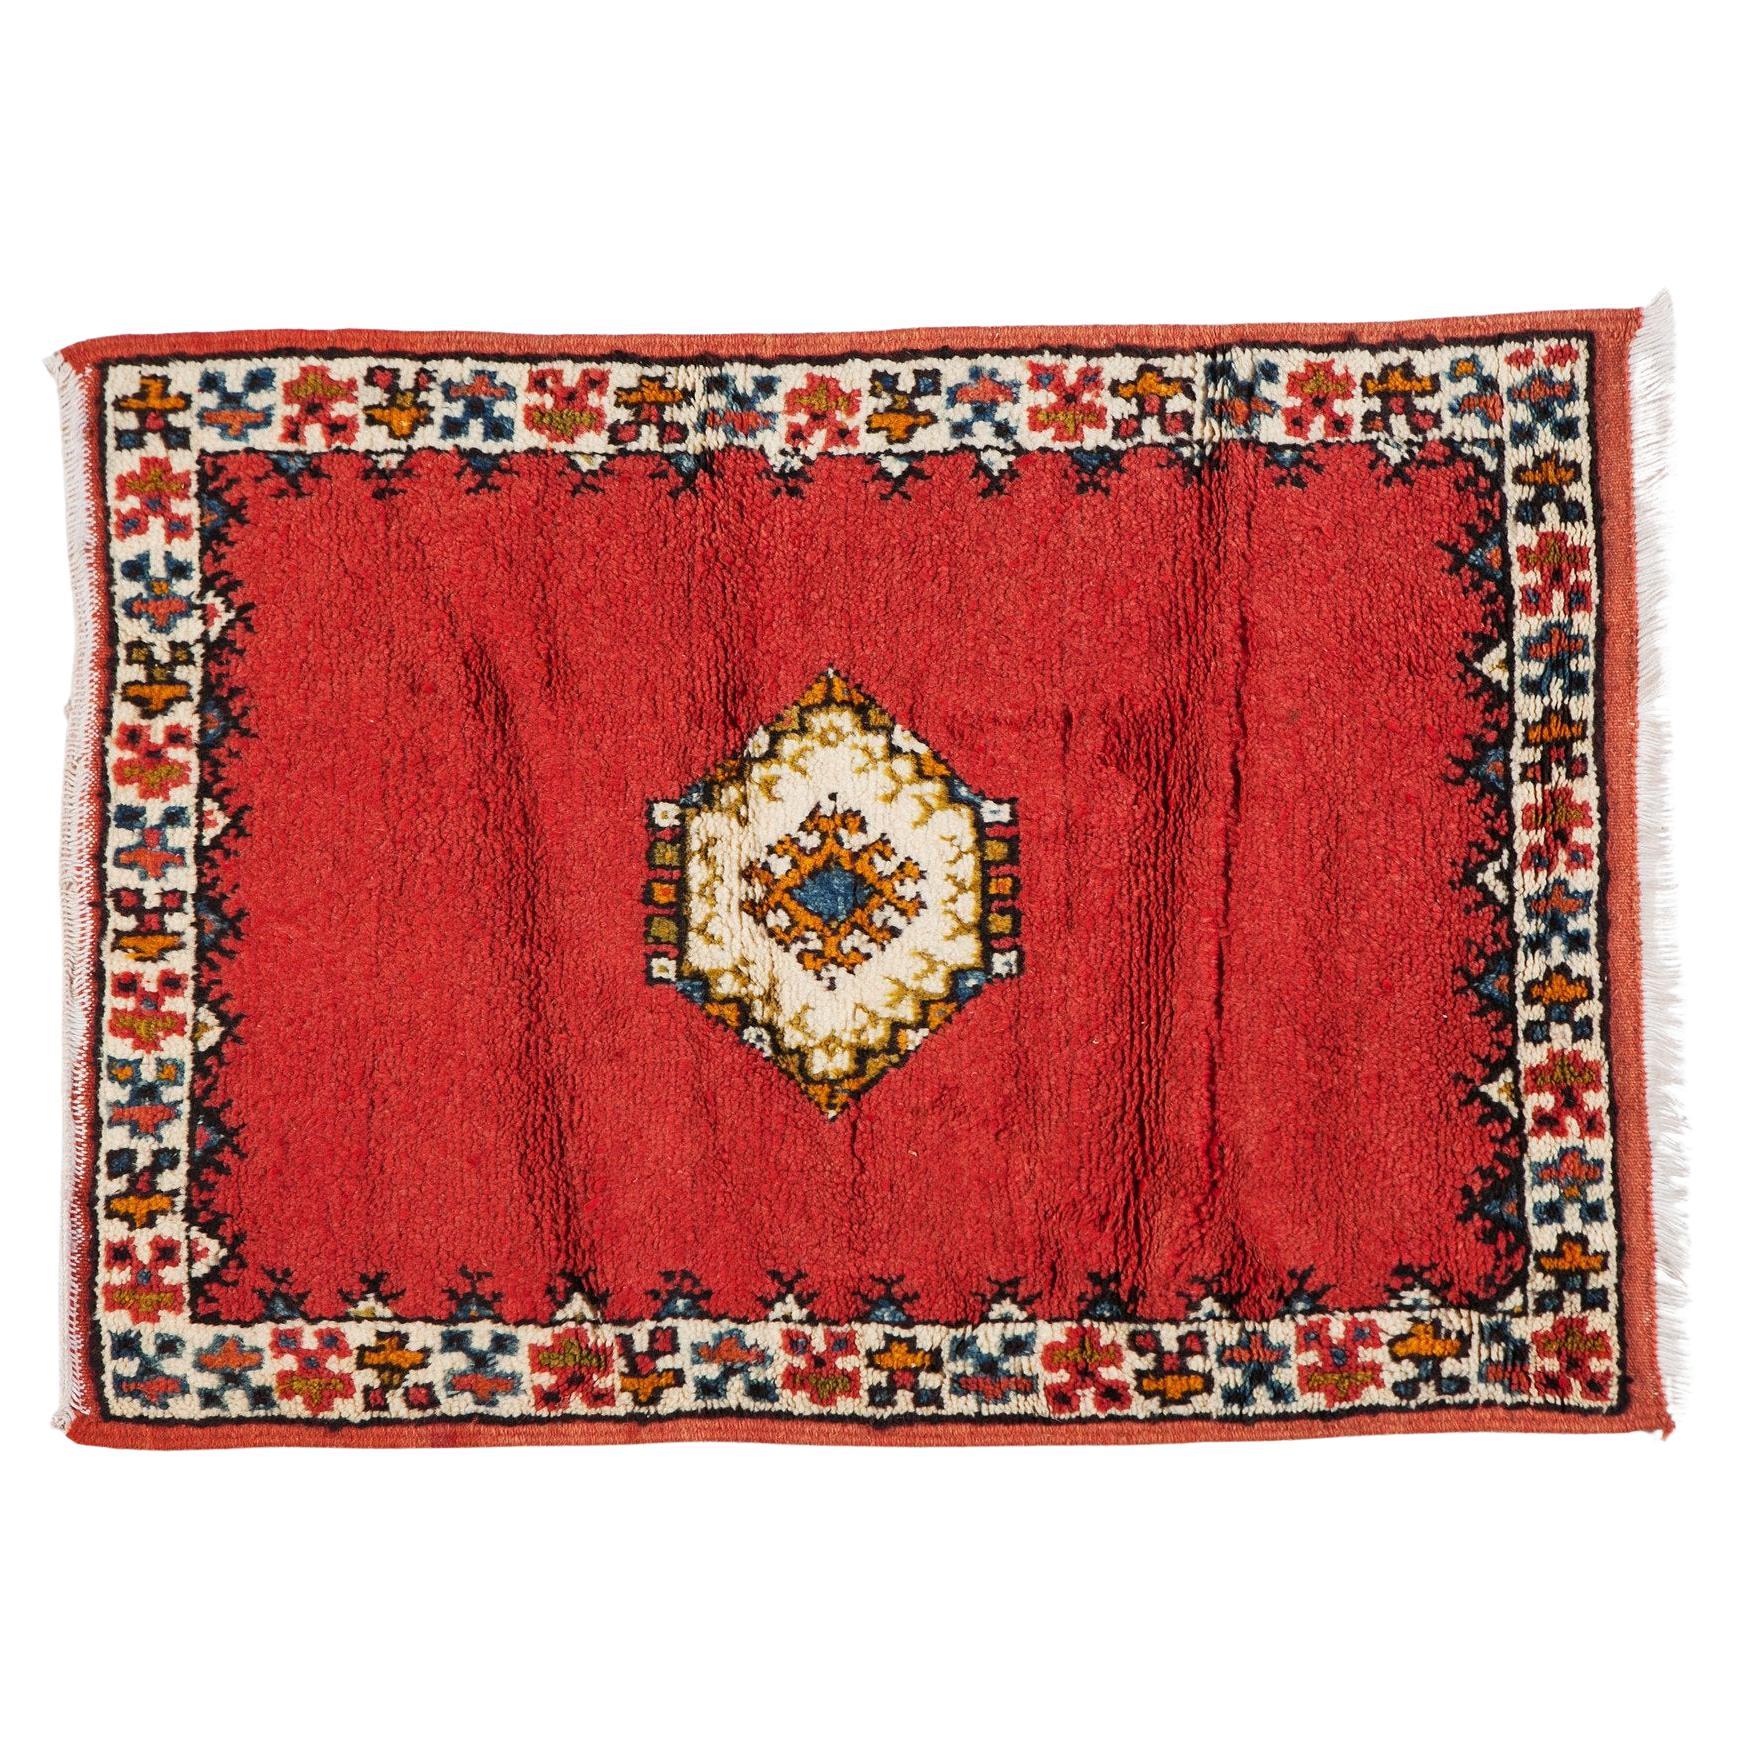 Marokkanischer roter handgewebter Stammeskunst-Teppich oder Teppich mit Diamant-Design